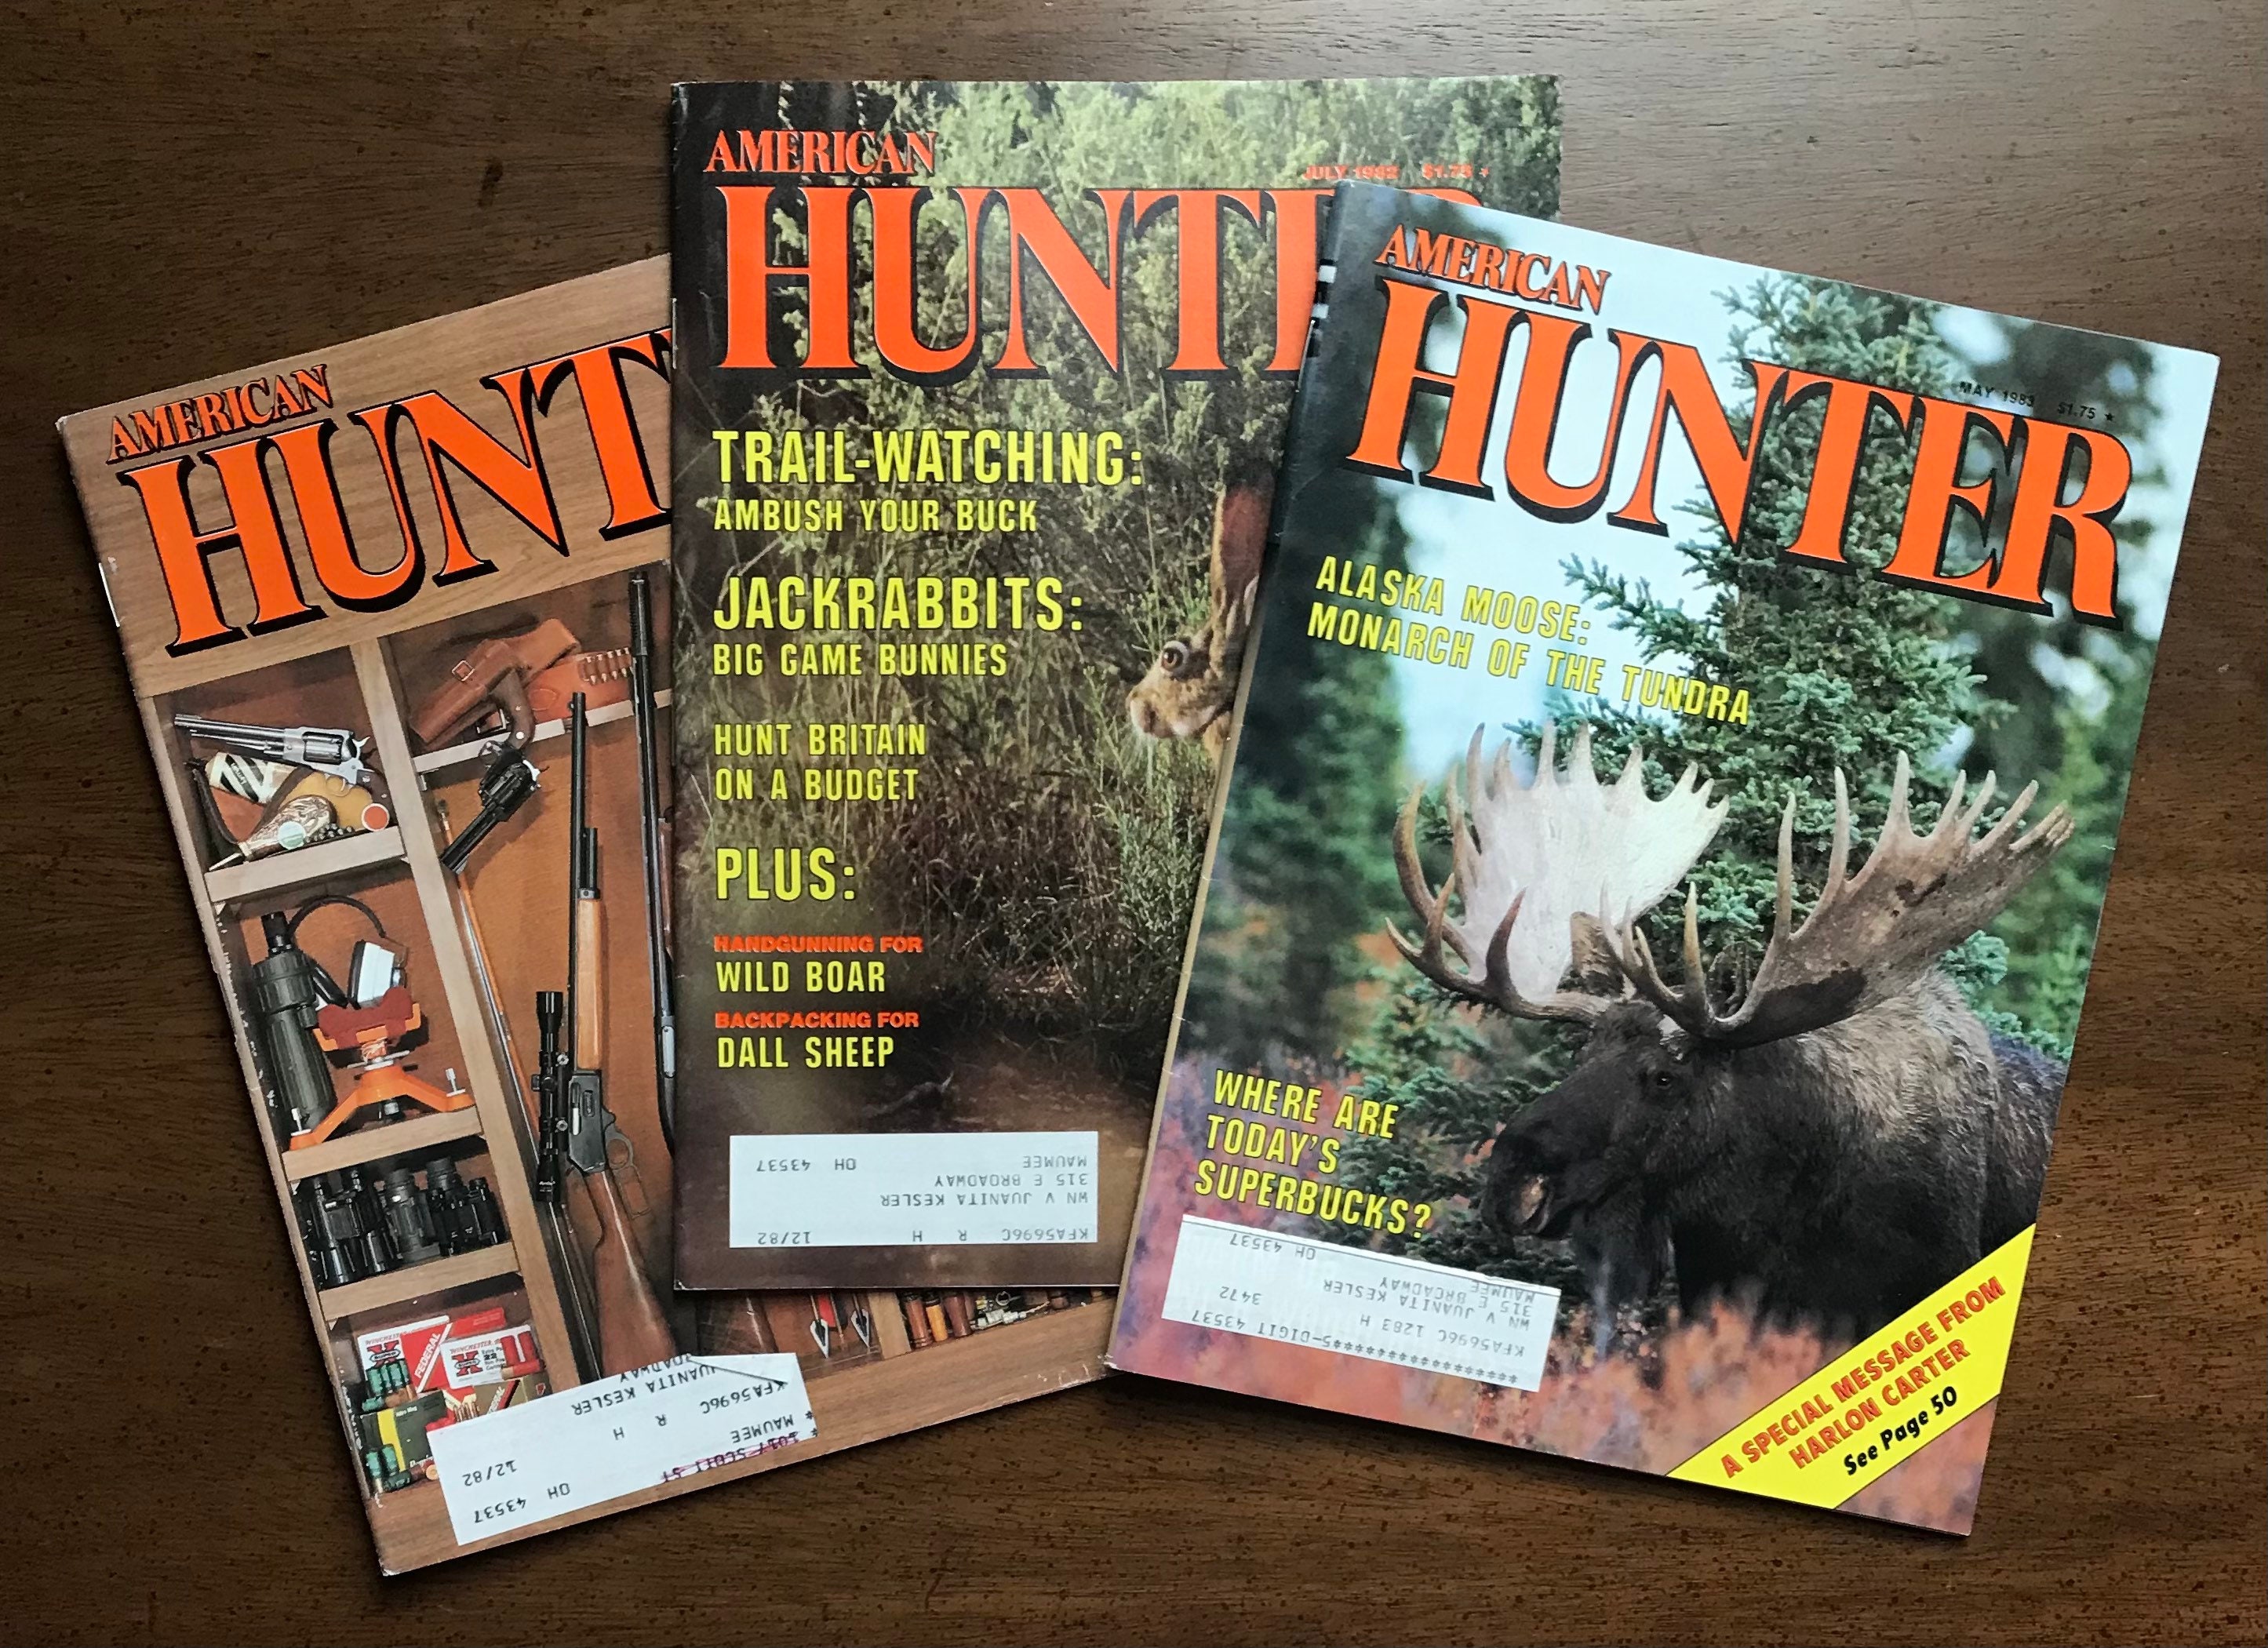 Hunting, Hunting Magazine